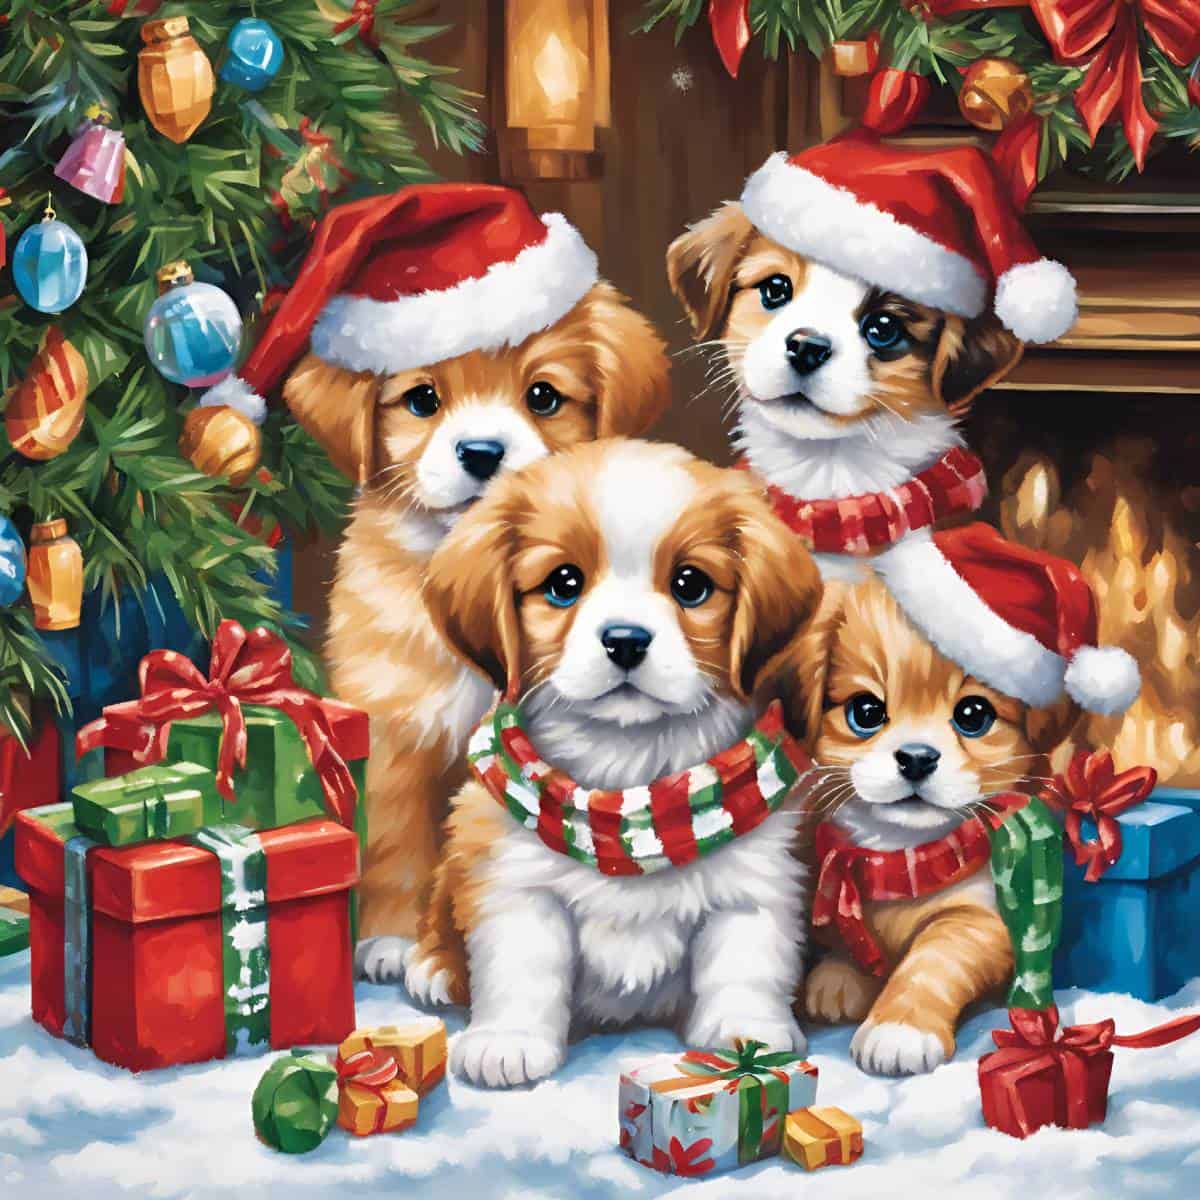 diamantes-mago-kits-de-pintura-de-diamantes-Eventos-Navidad-Vacaciones-Cachorros-y-gatitos-original.jpg